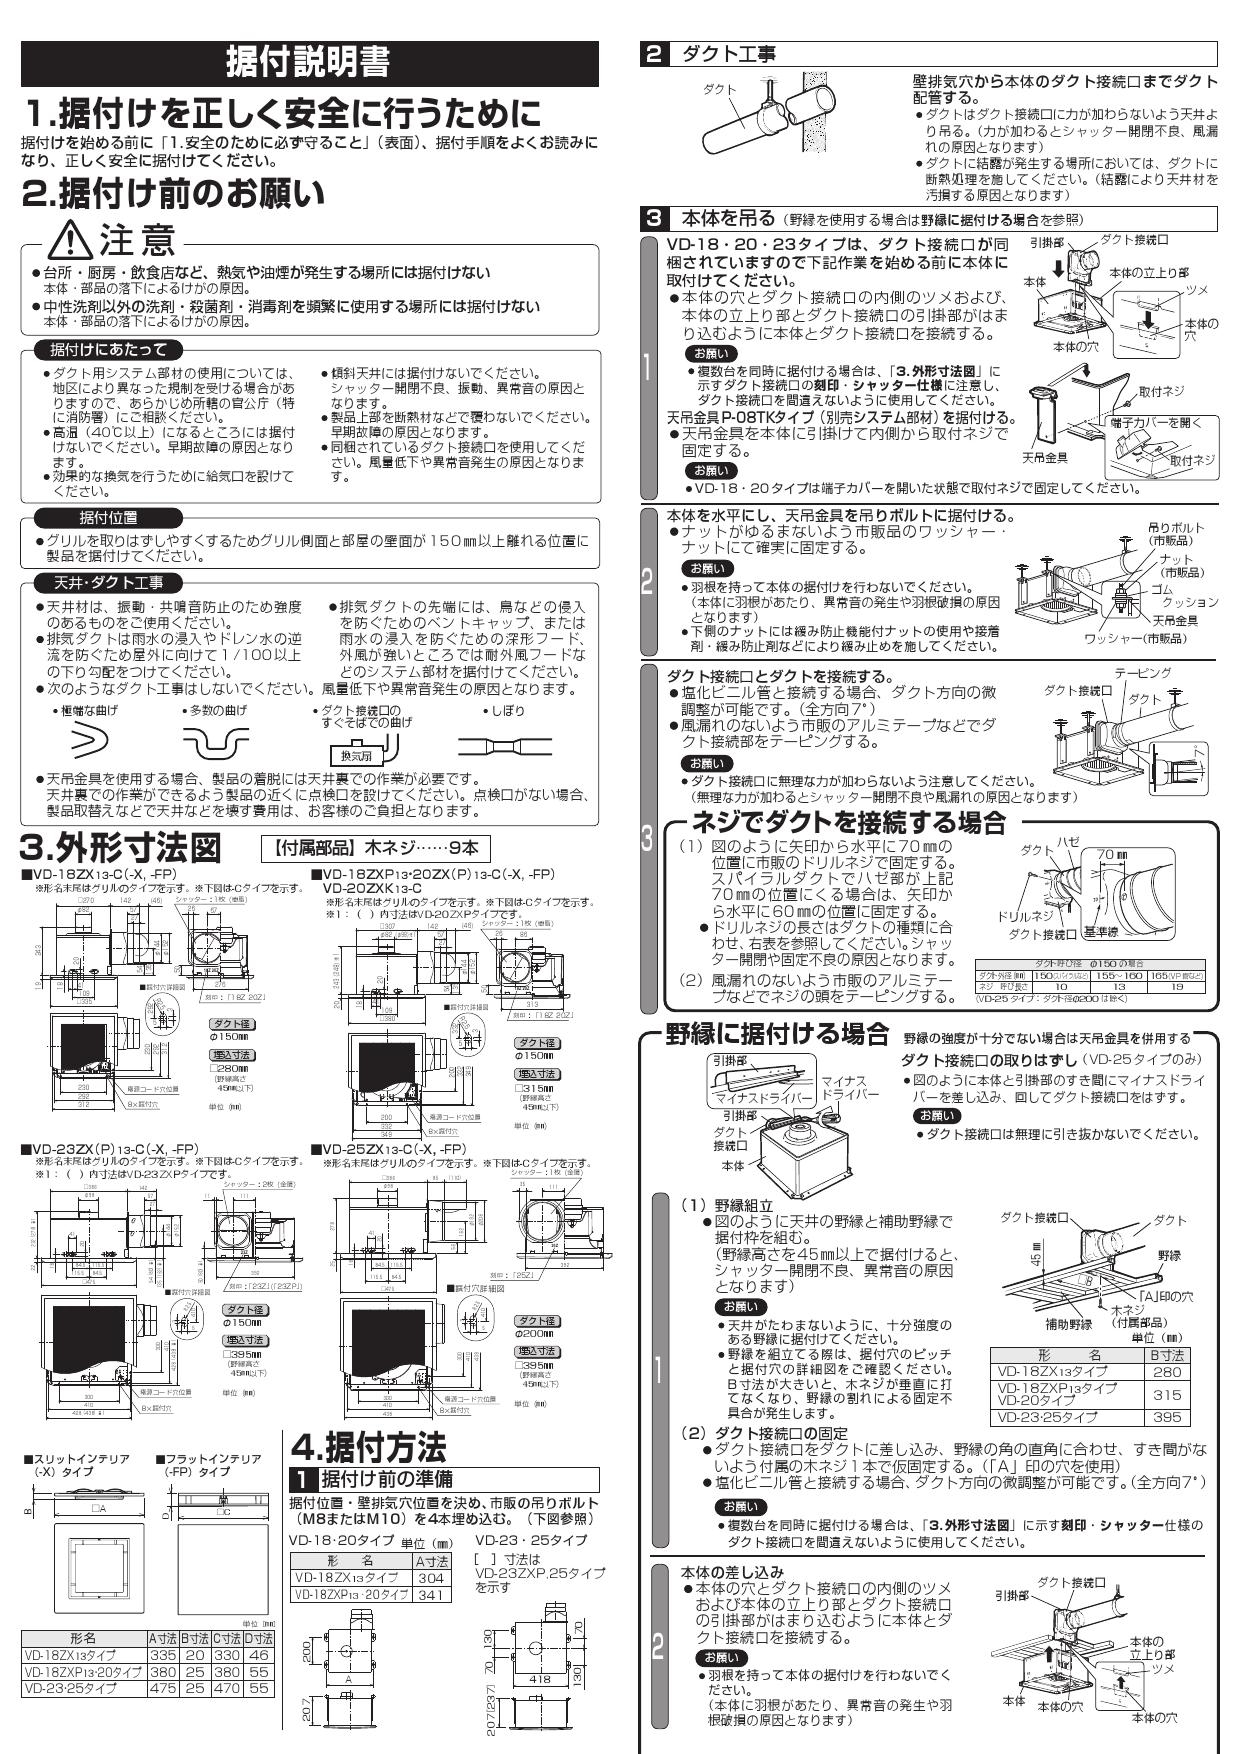 格安 三菱電機 MITSUBISHI ELECTRIC 天井埋込形ダクト用換気扇 低騒音形 インテリア格子タイプ VD-20ZX13-C 